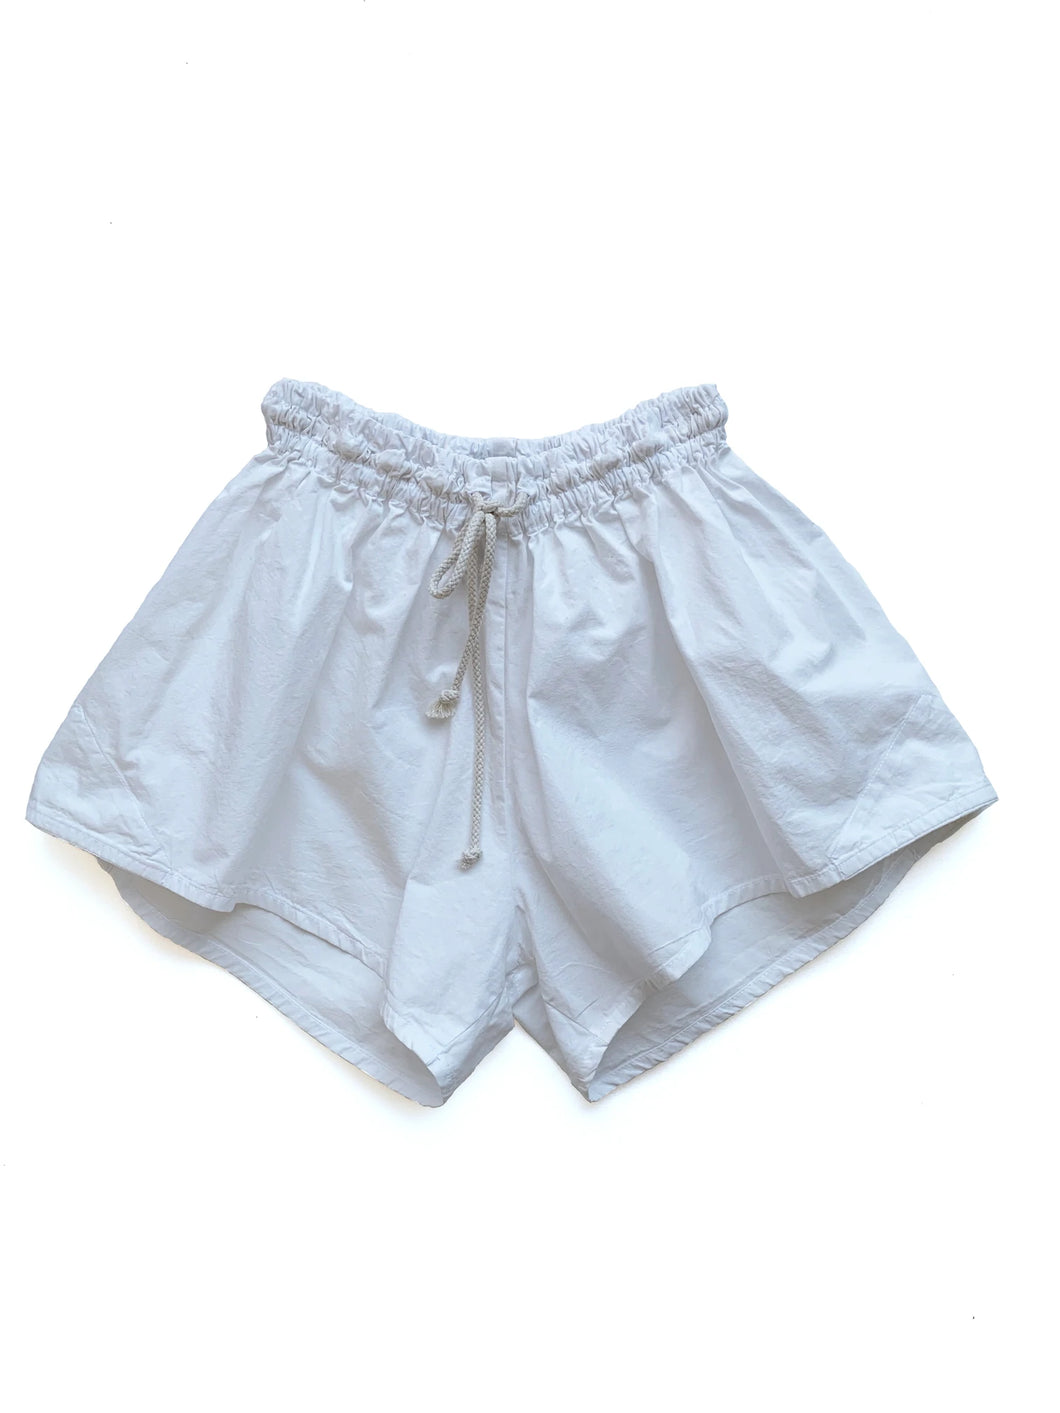 Von Sono Schulz Shorts - White Cotton